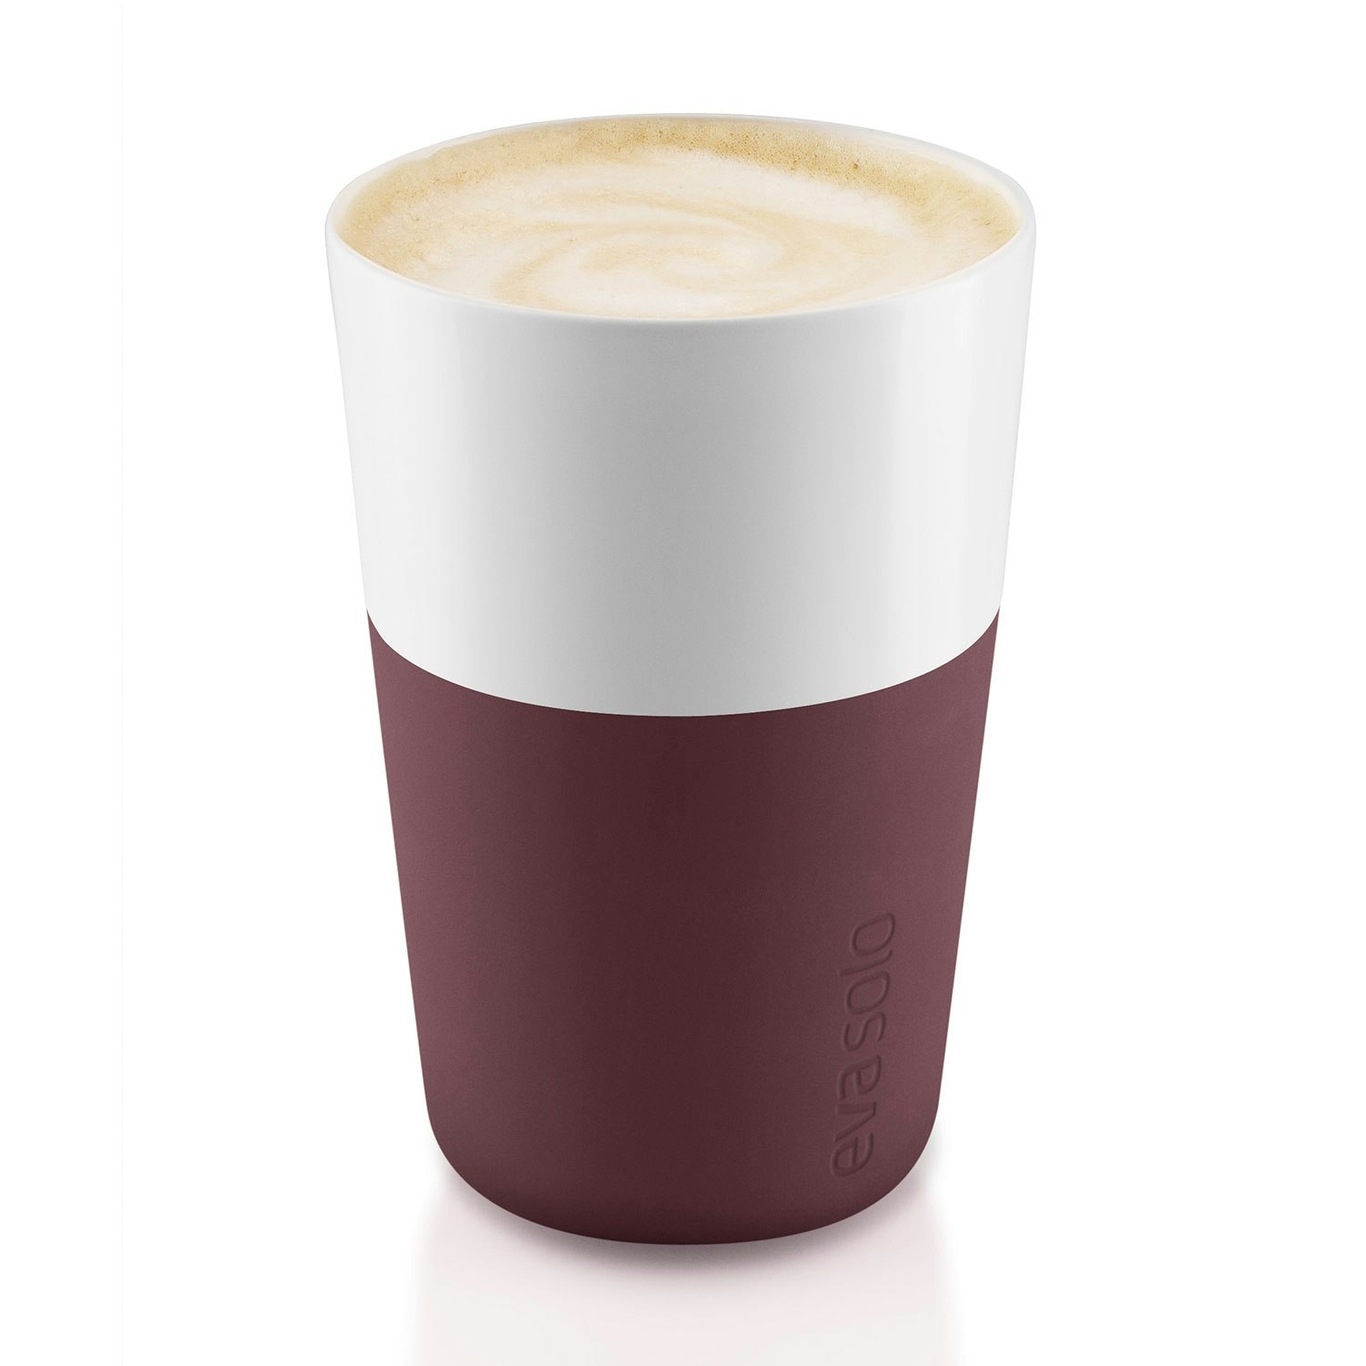 https://royaldesign.com/image/2/eva-solo-cafe-latte-mug-36-cl-2-pack-11?w=800&quality=80